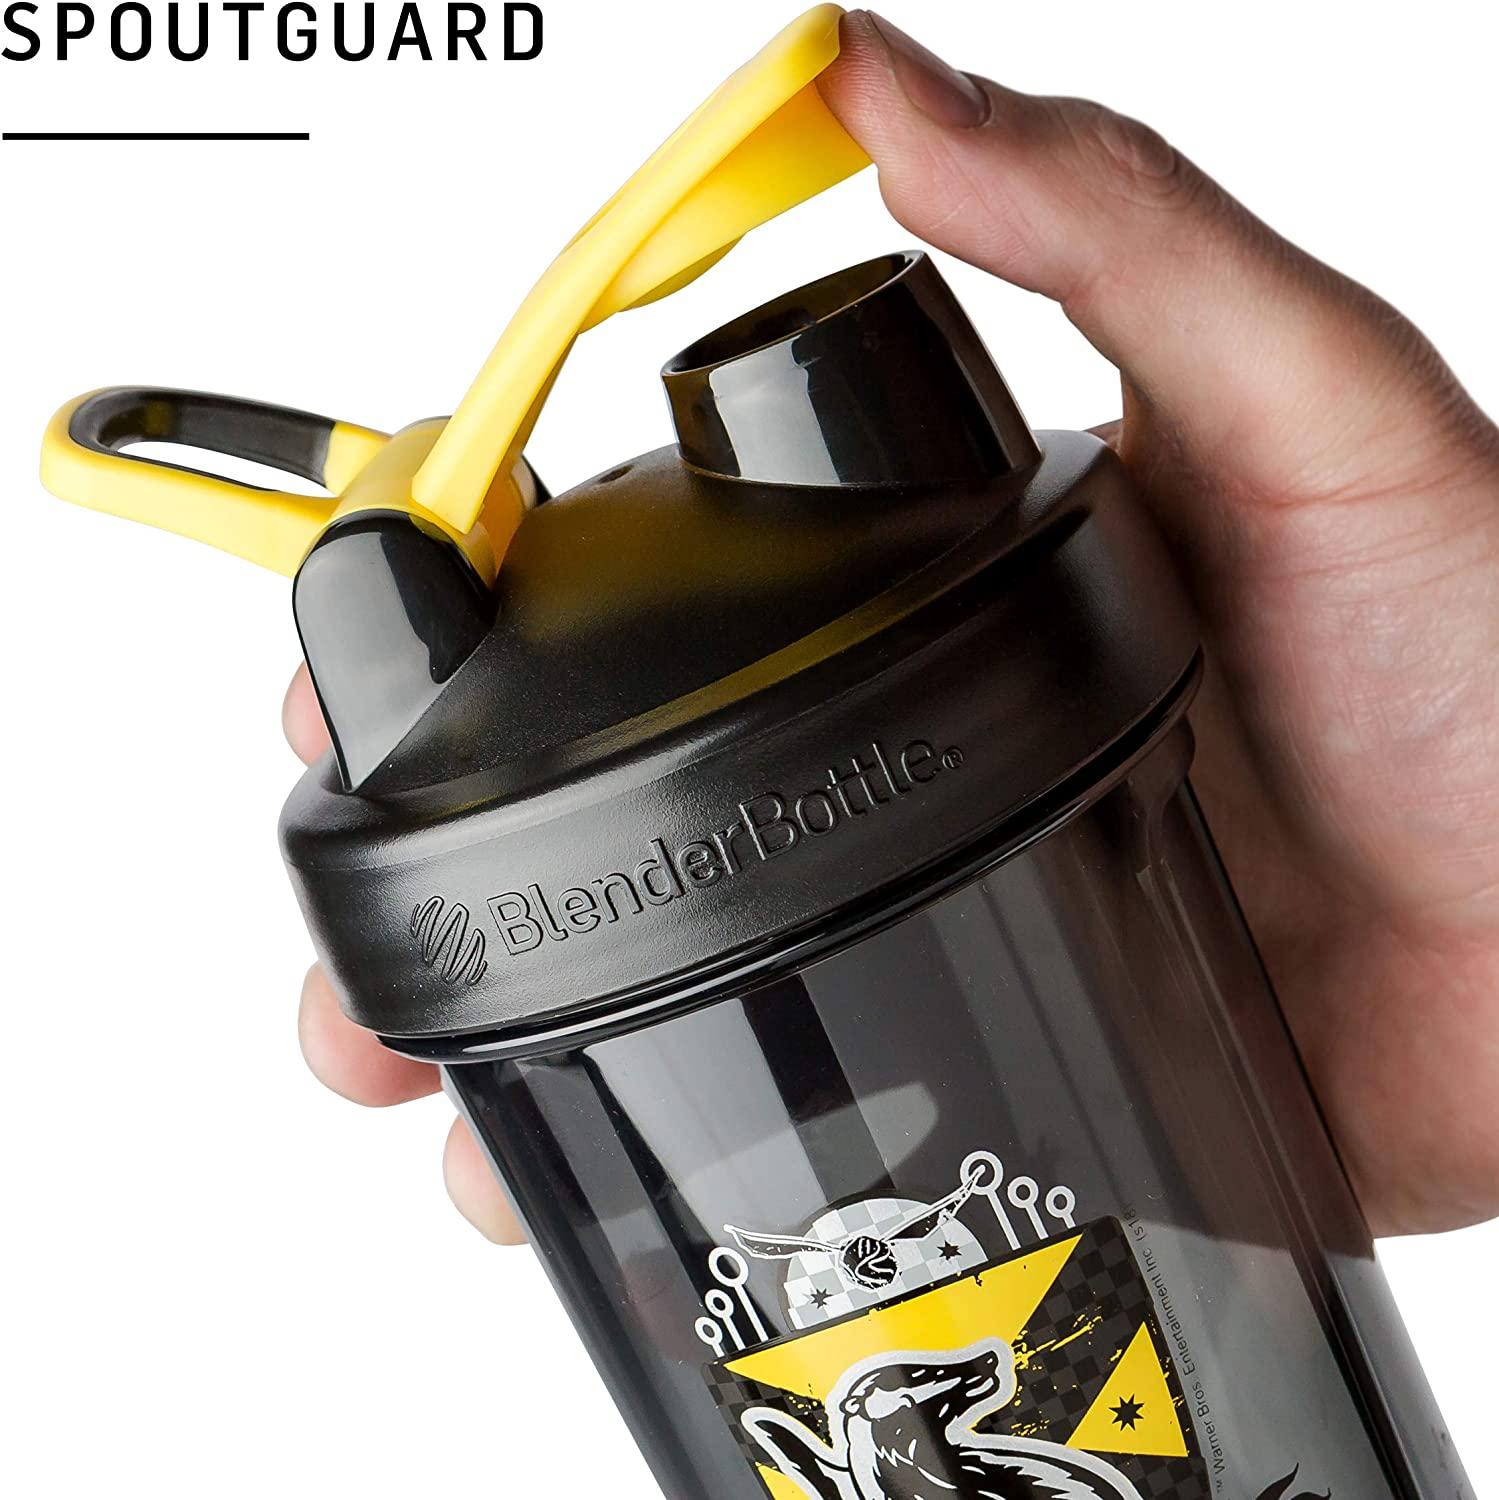 BlenderBottle Shaker Bottle Pro Series Perfect for Protein Shakes